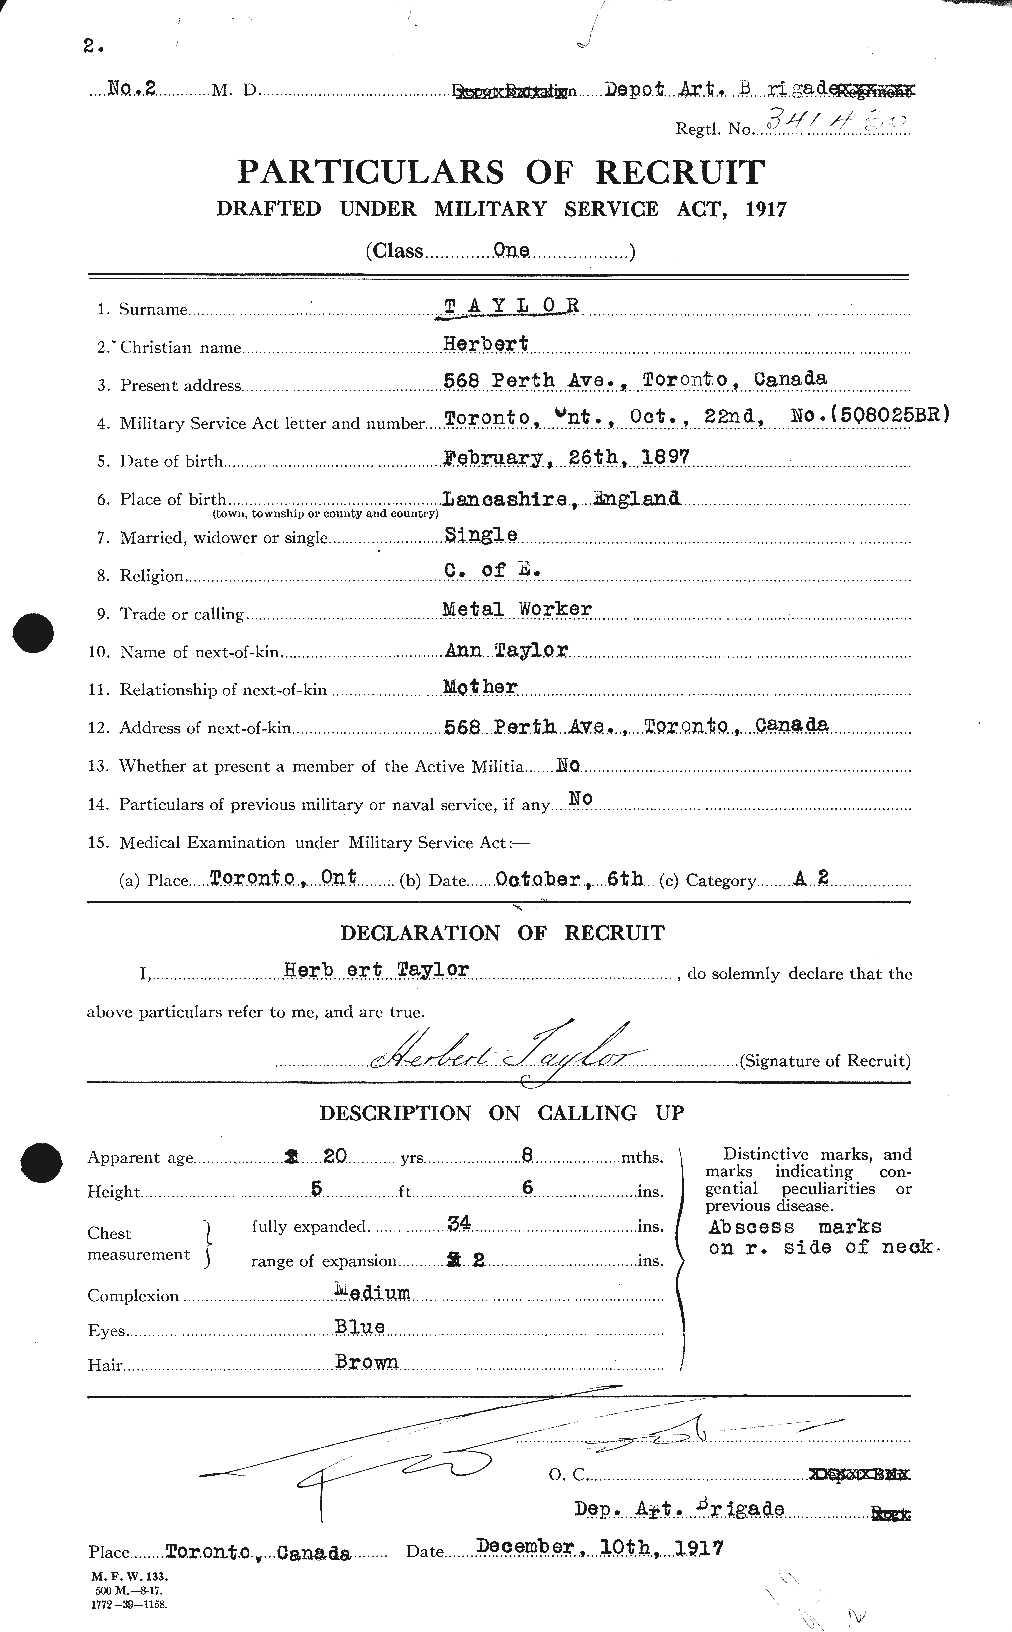 Dossiers du Personnel de la Première Guerre mondiale - CEC 626557a